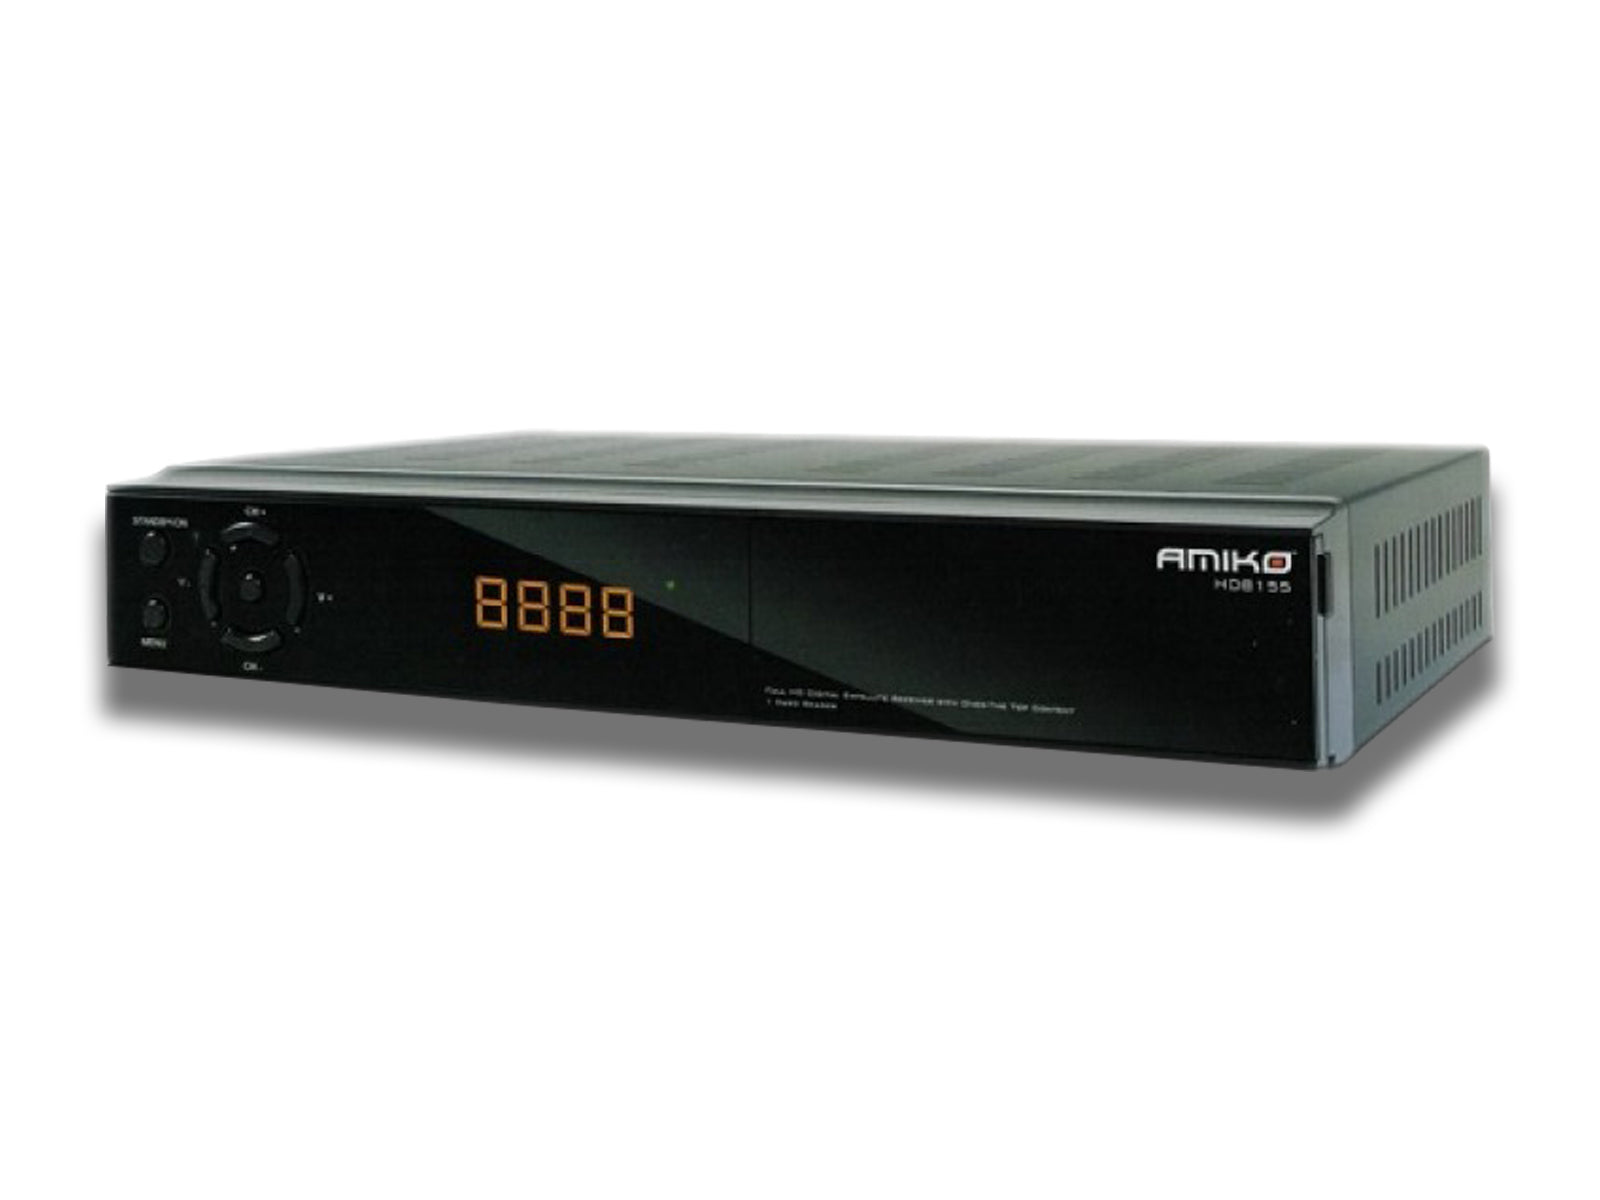 EDISION Picco T265 🔥 Tuner DVB T2 💥 HEVC H.265 👍 10 BIT DVB-C ✓ Menu  ☑️✔️ 